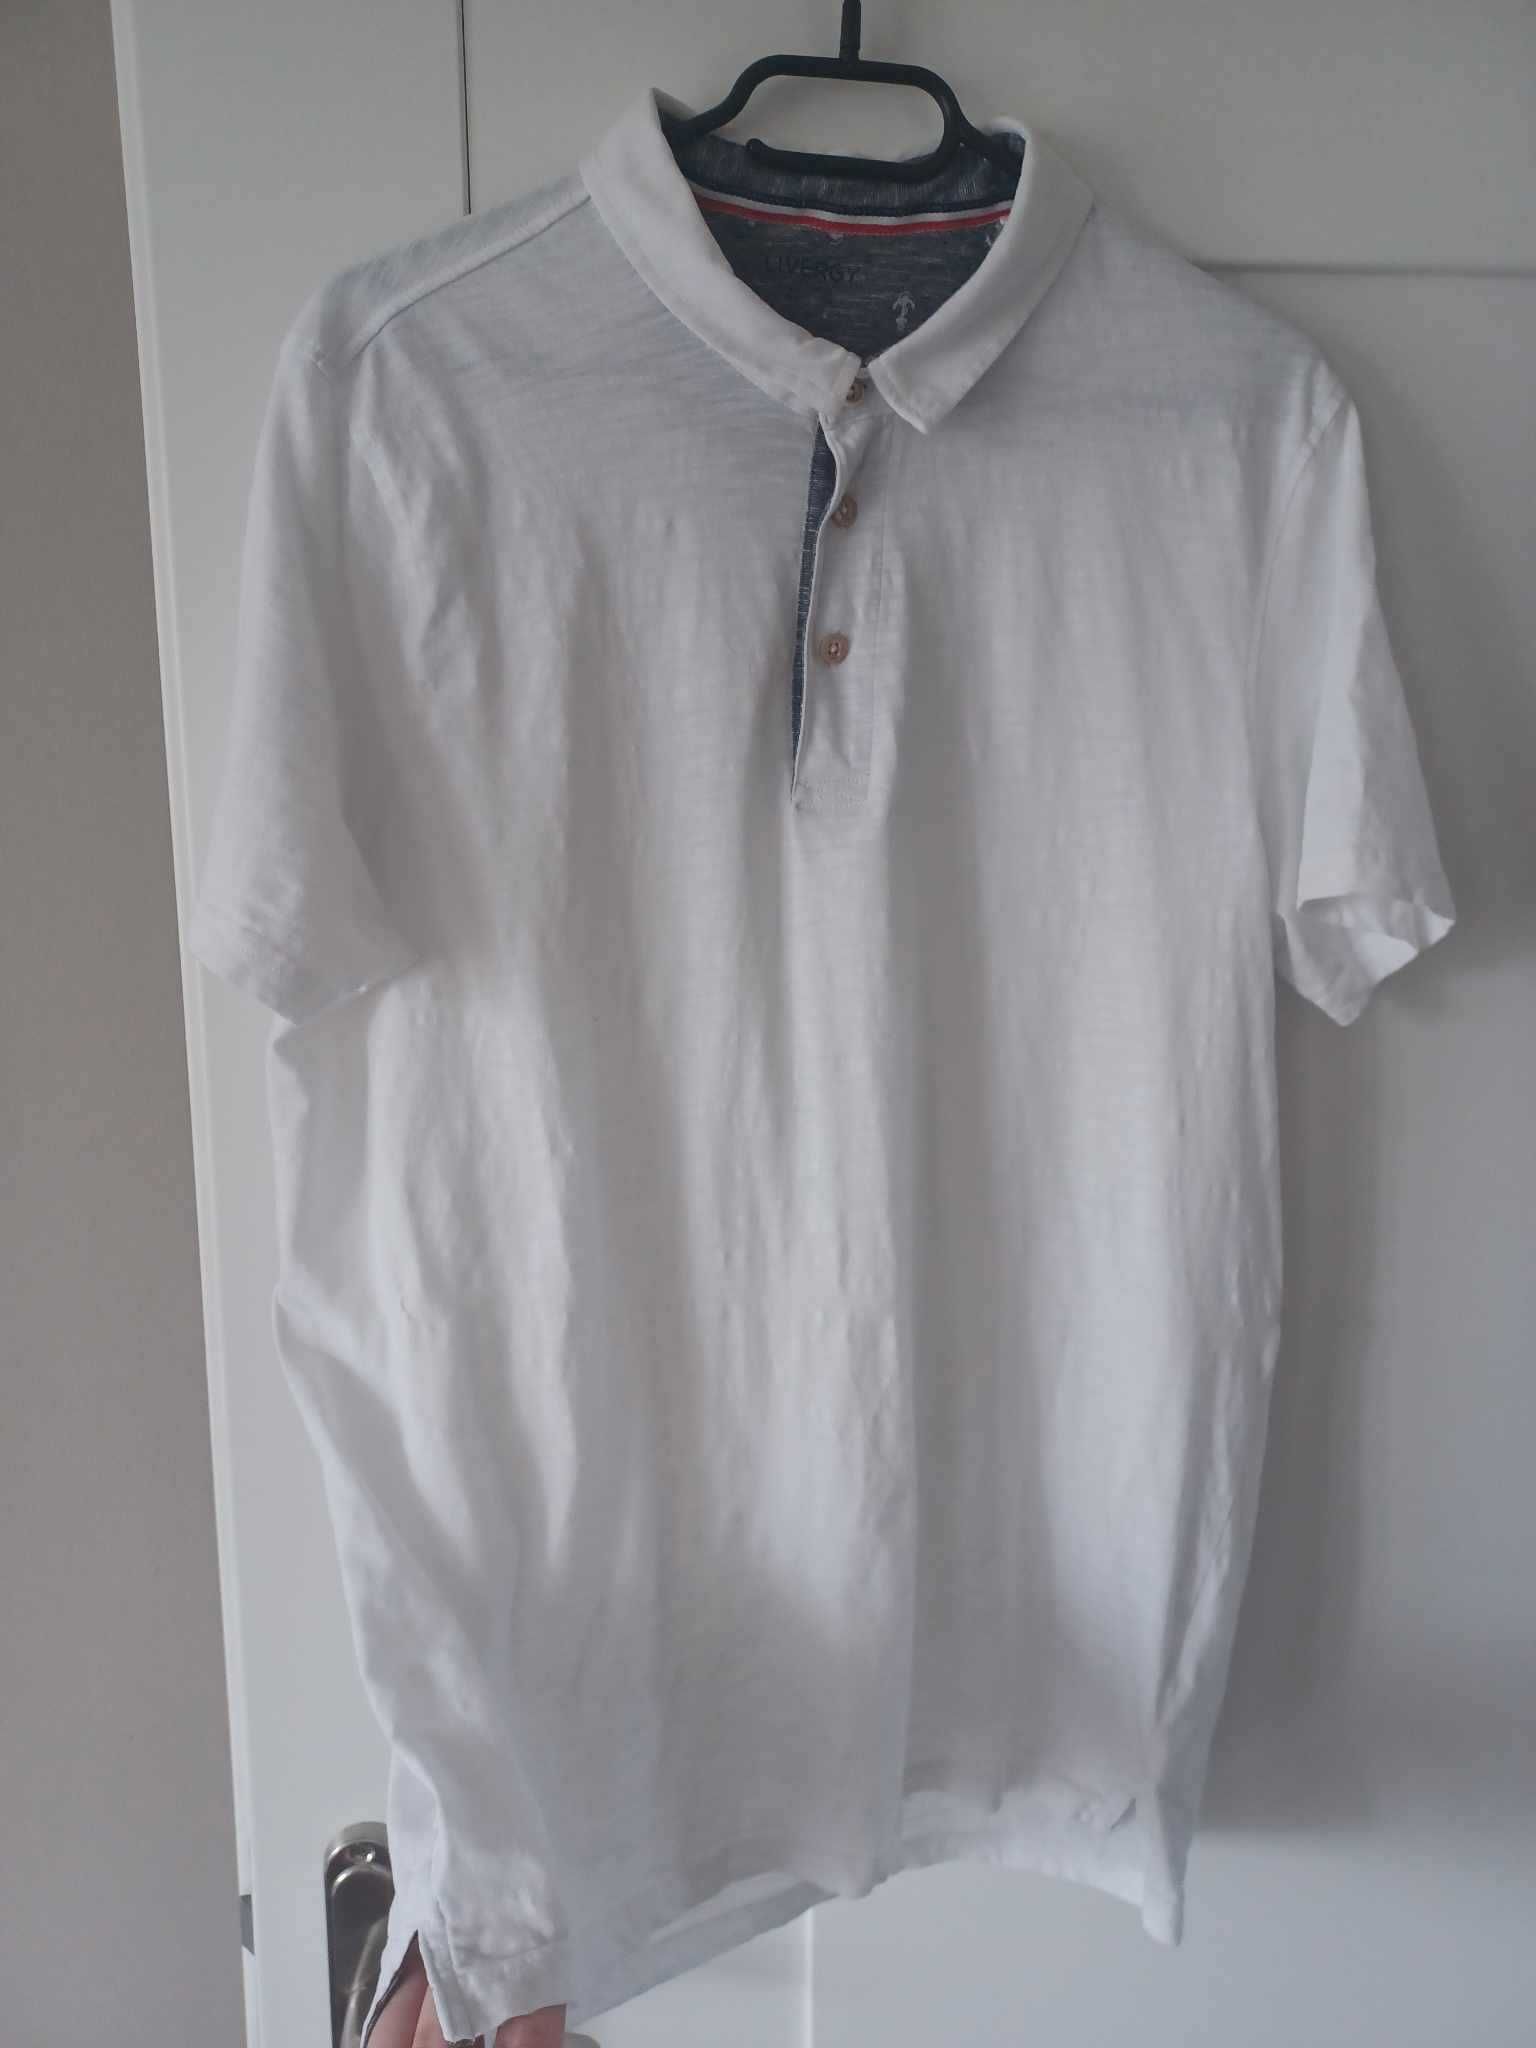 Klasyczna biała koszulka polo Livergy / męska / L (52) / świetny stan